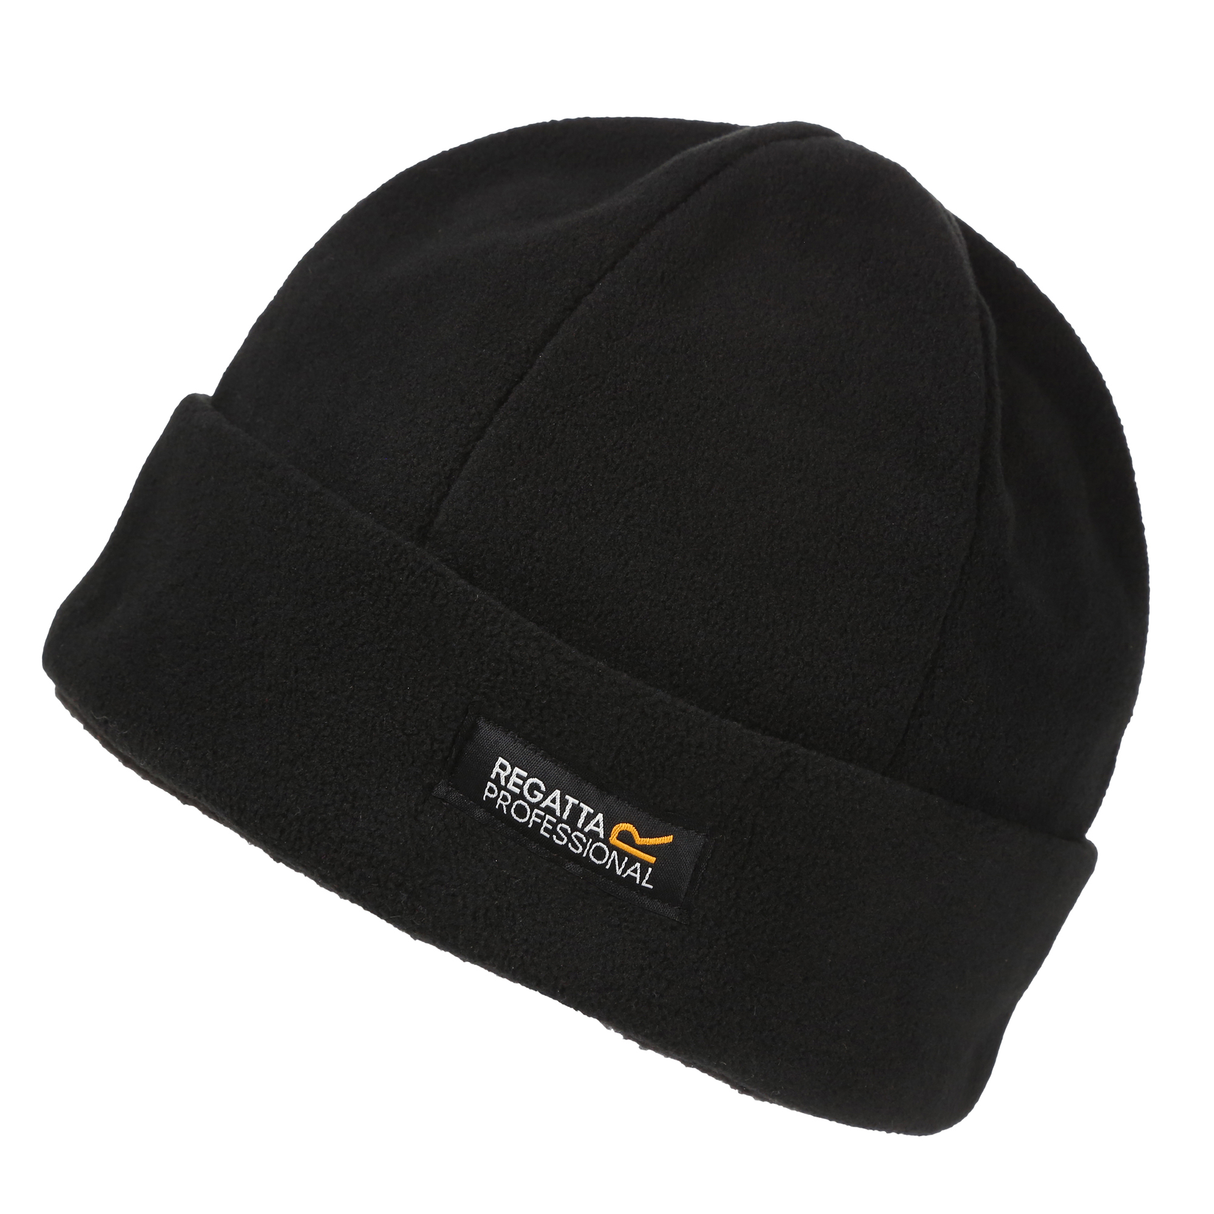 Regatta Professional Pro Docker Hat